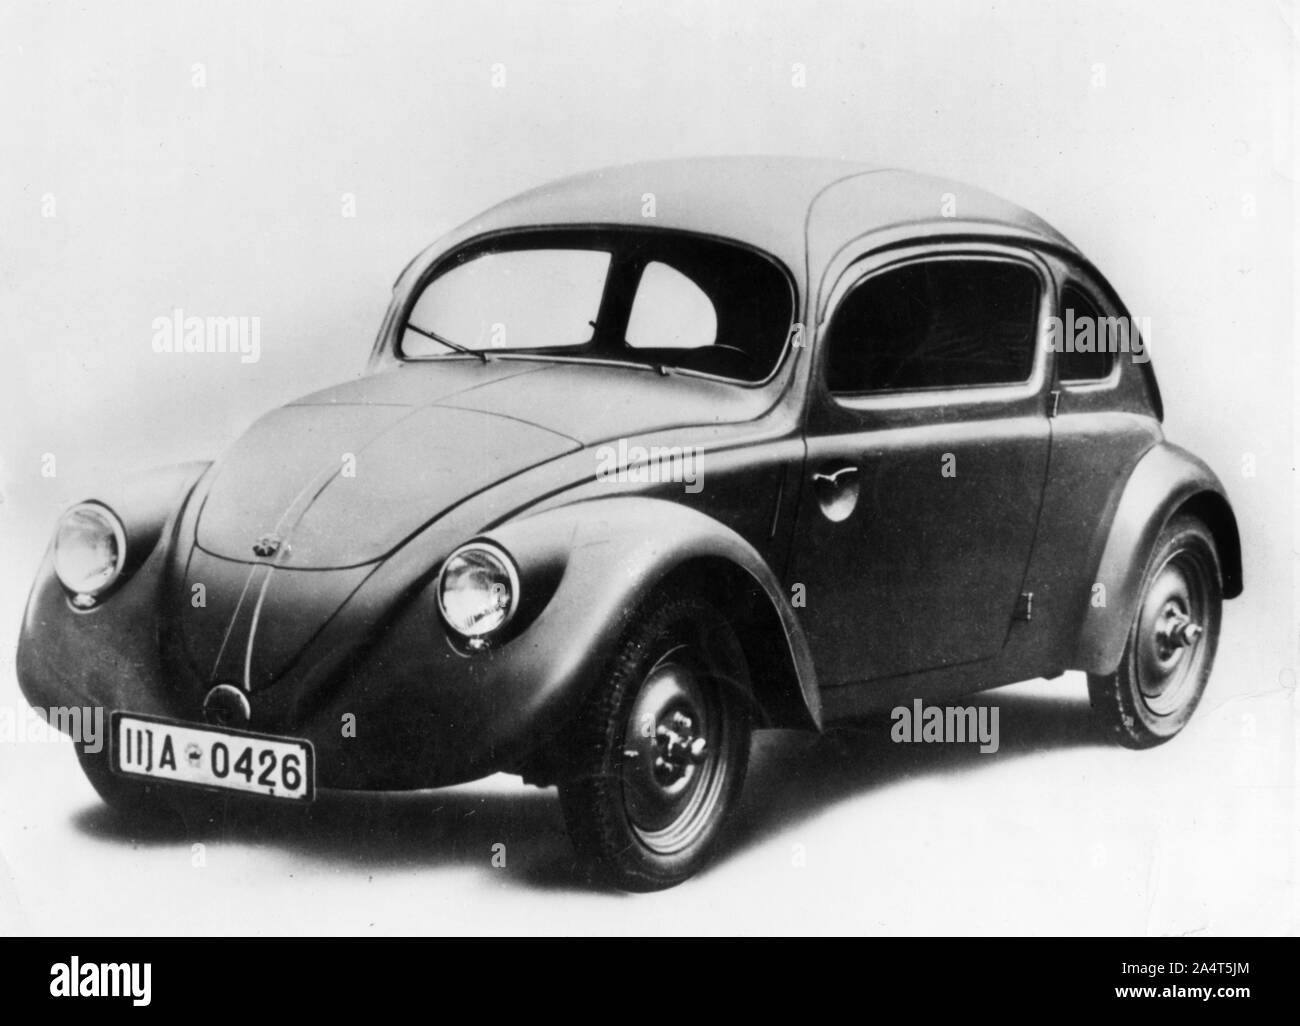 1937 Volkswagen Beetle prototype. Stock Photo